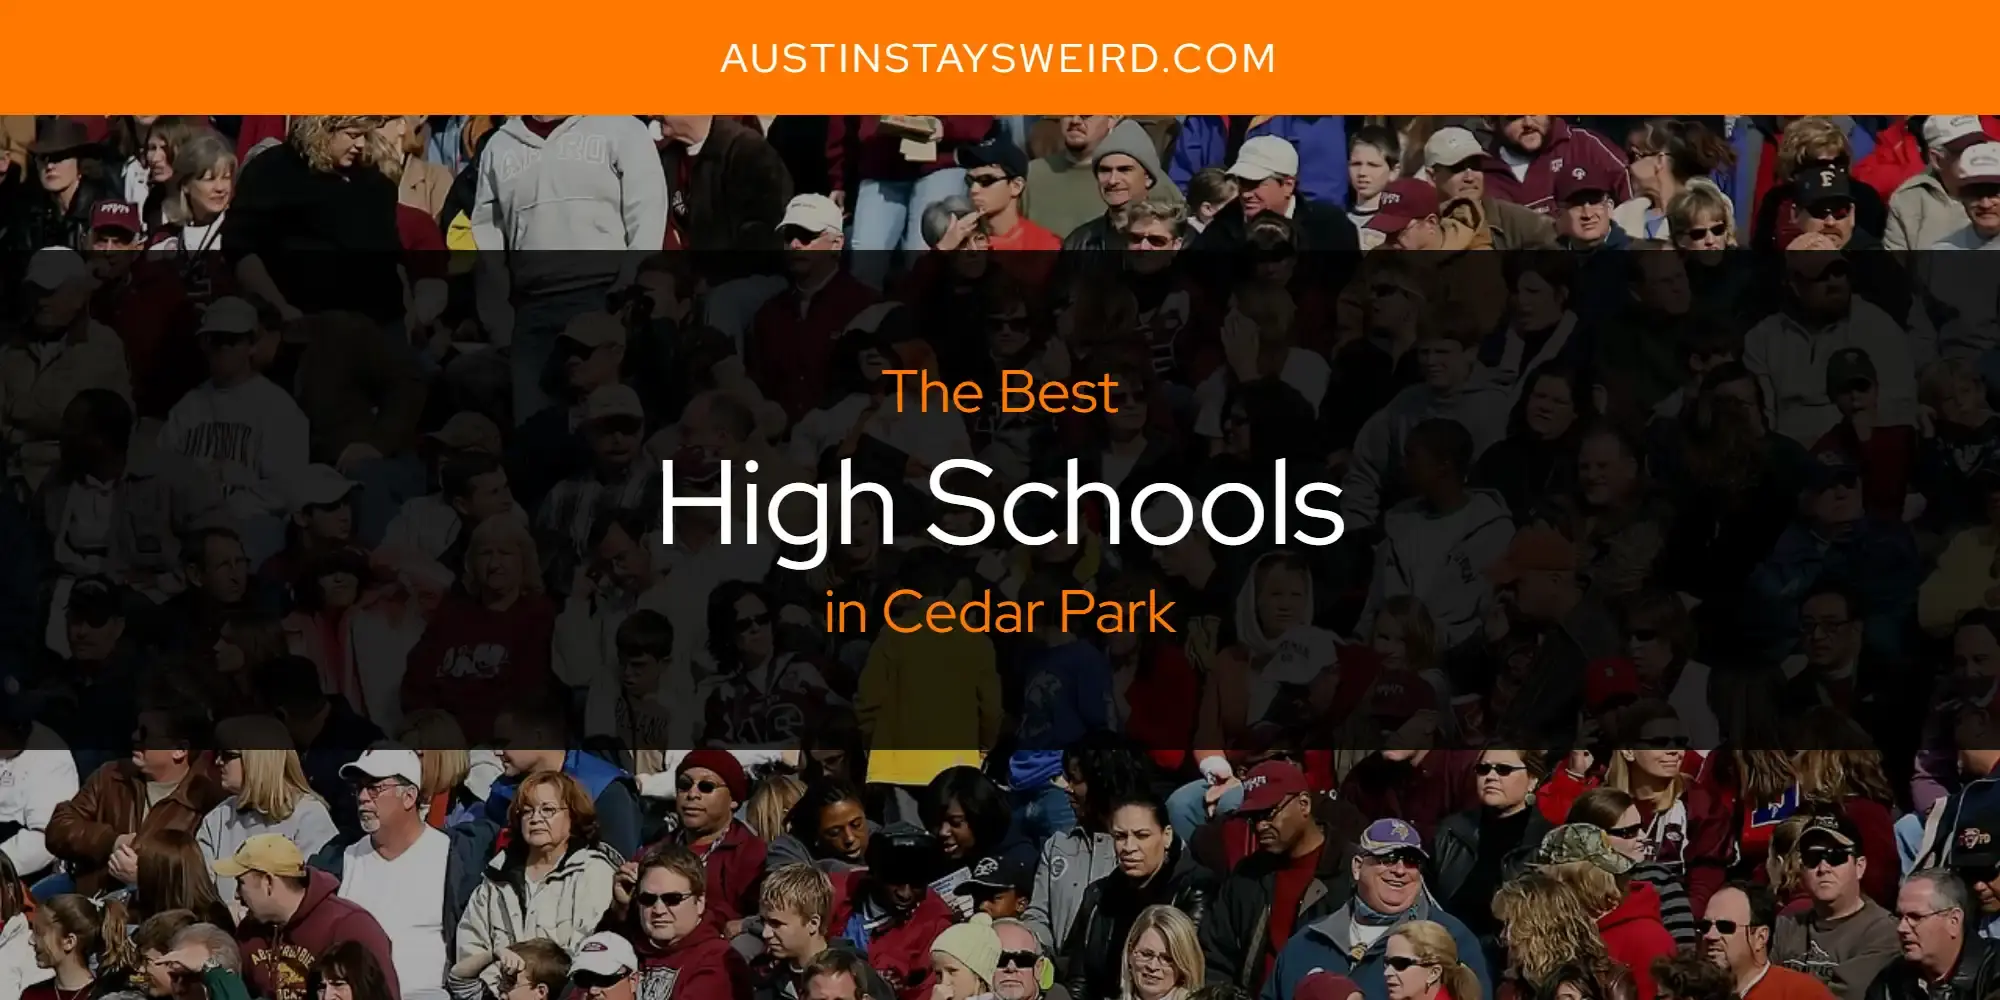 Best High Schools in Cedar Park? Here's the Top 8